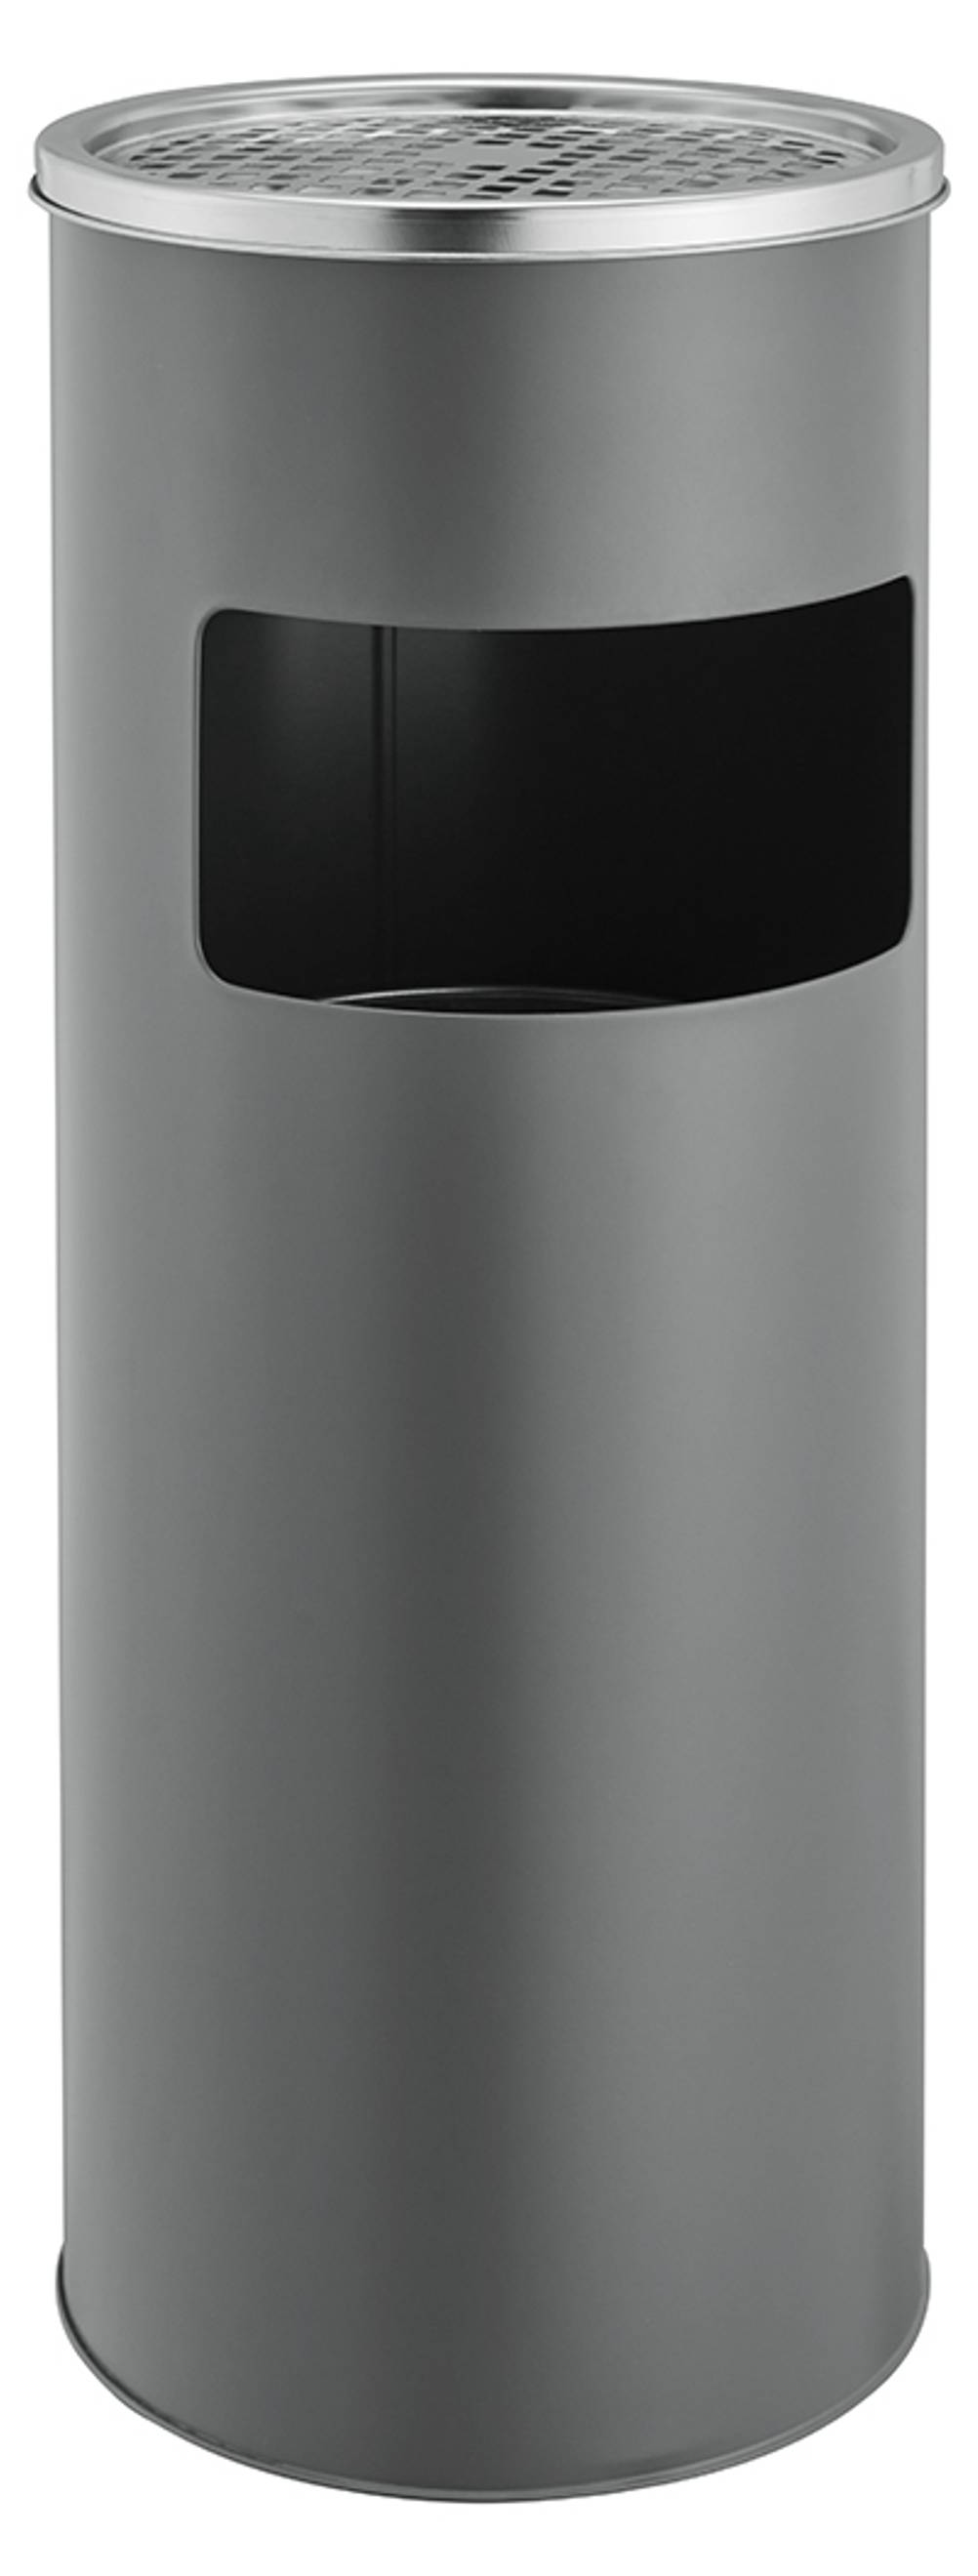 TecTake 30L Standaschenbecher Aschenbecher mit Mülleimer inkl. Inneneimer |  Total: Ø 25 x 61 cm - diverse Farben - (Chrom | Nr. 402281)